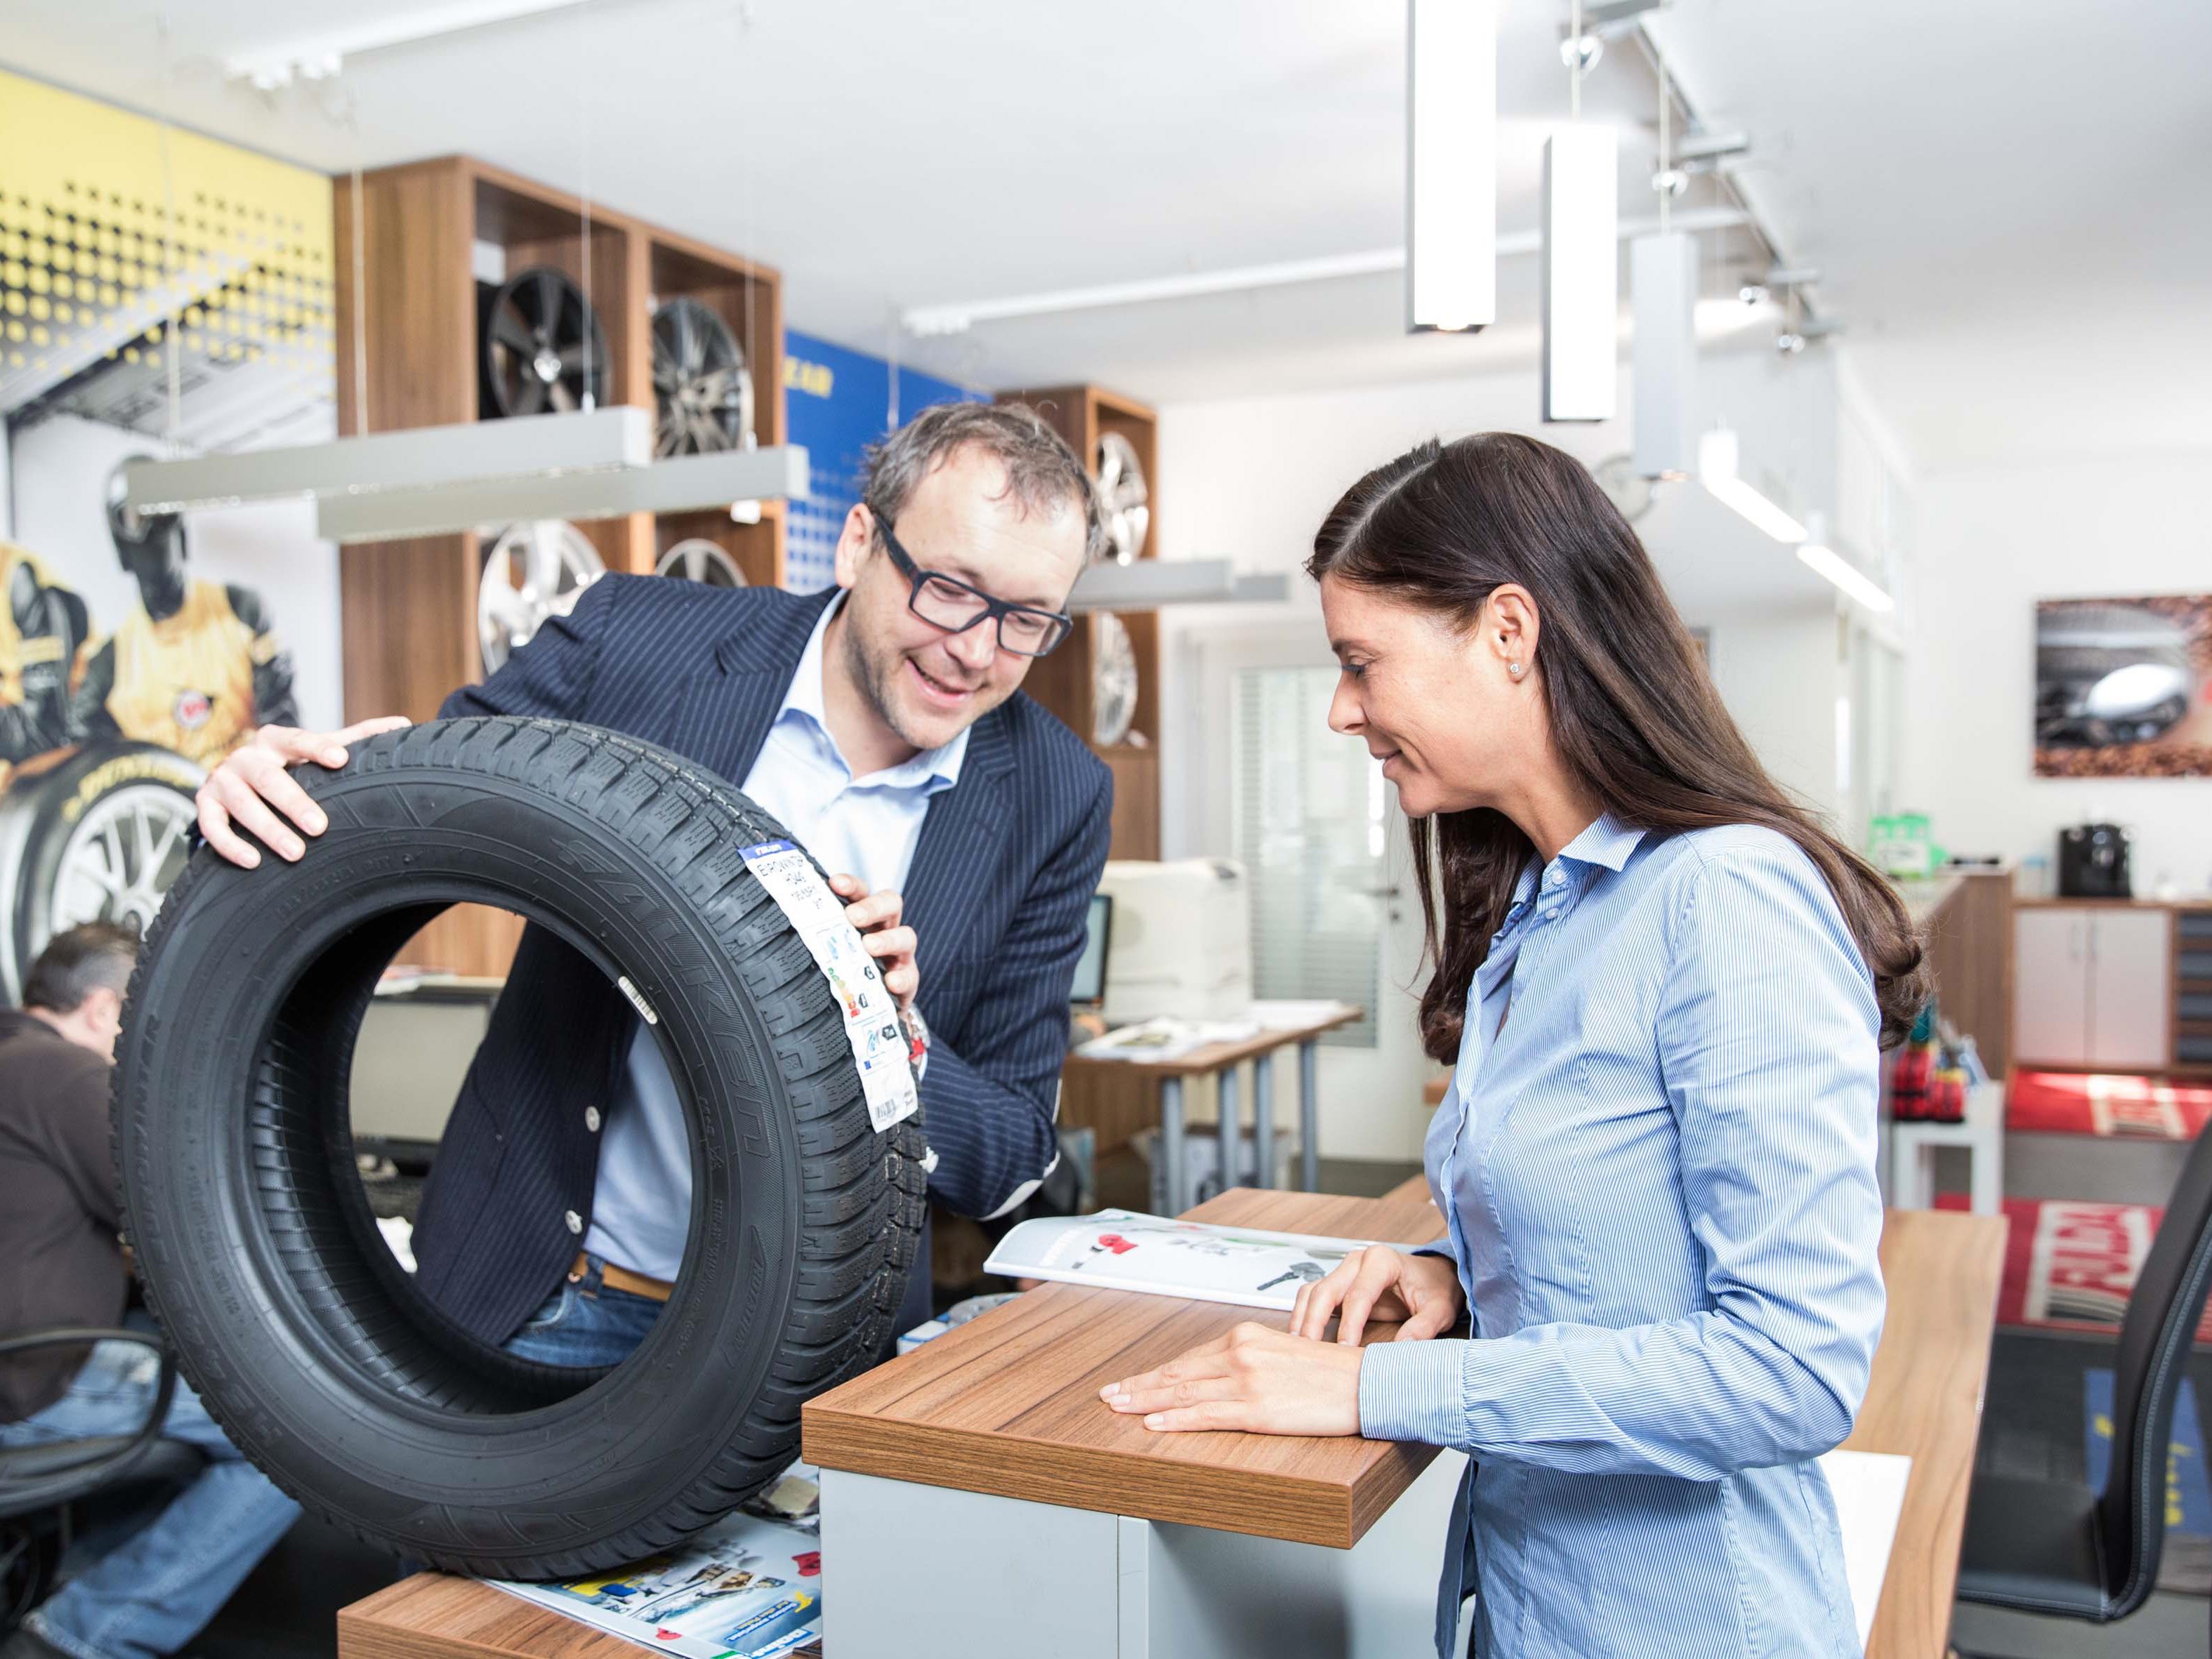 Reifenexperte Michael Peschek rät, sich beim Reifenkauf auf alle Fälle vom Fachhändler beraten zu lassen.